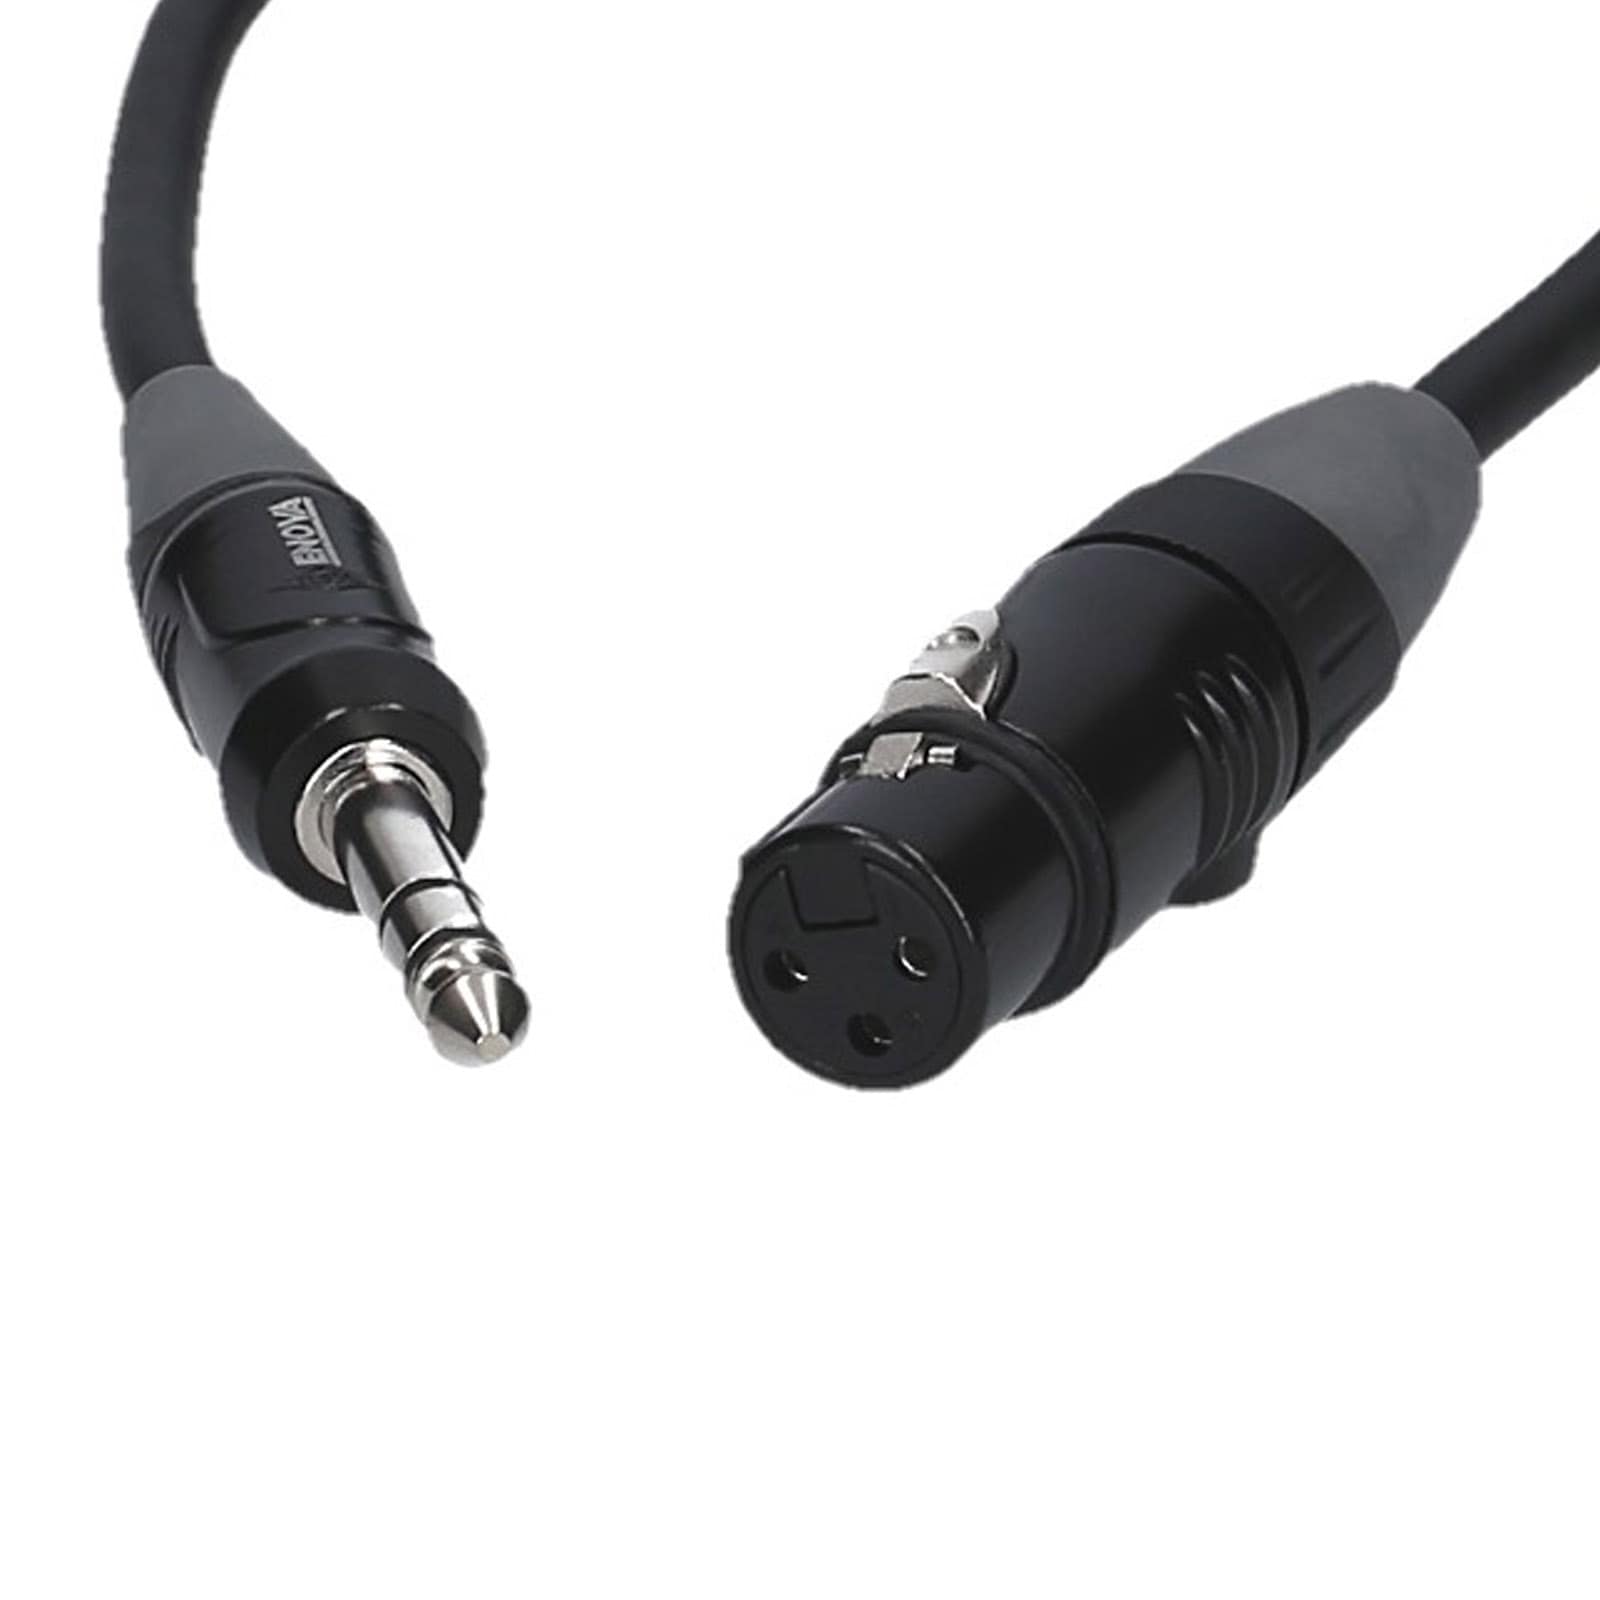 Adaptateur Connecteur de Cable XLR Prise Femelle 3 Broches Plug Micorphone  DMX